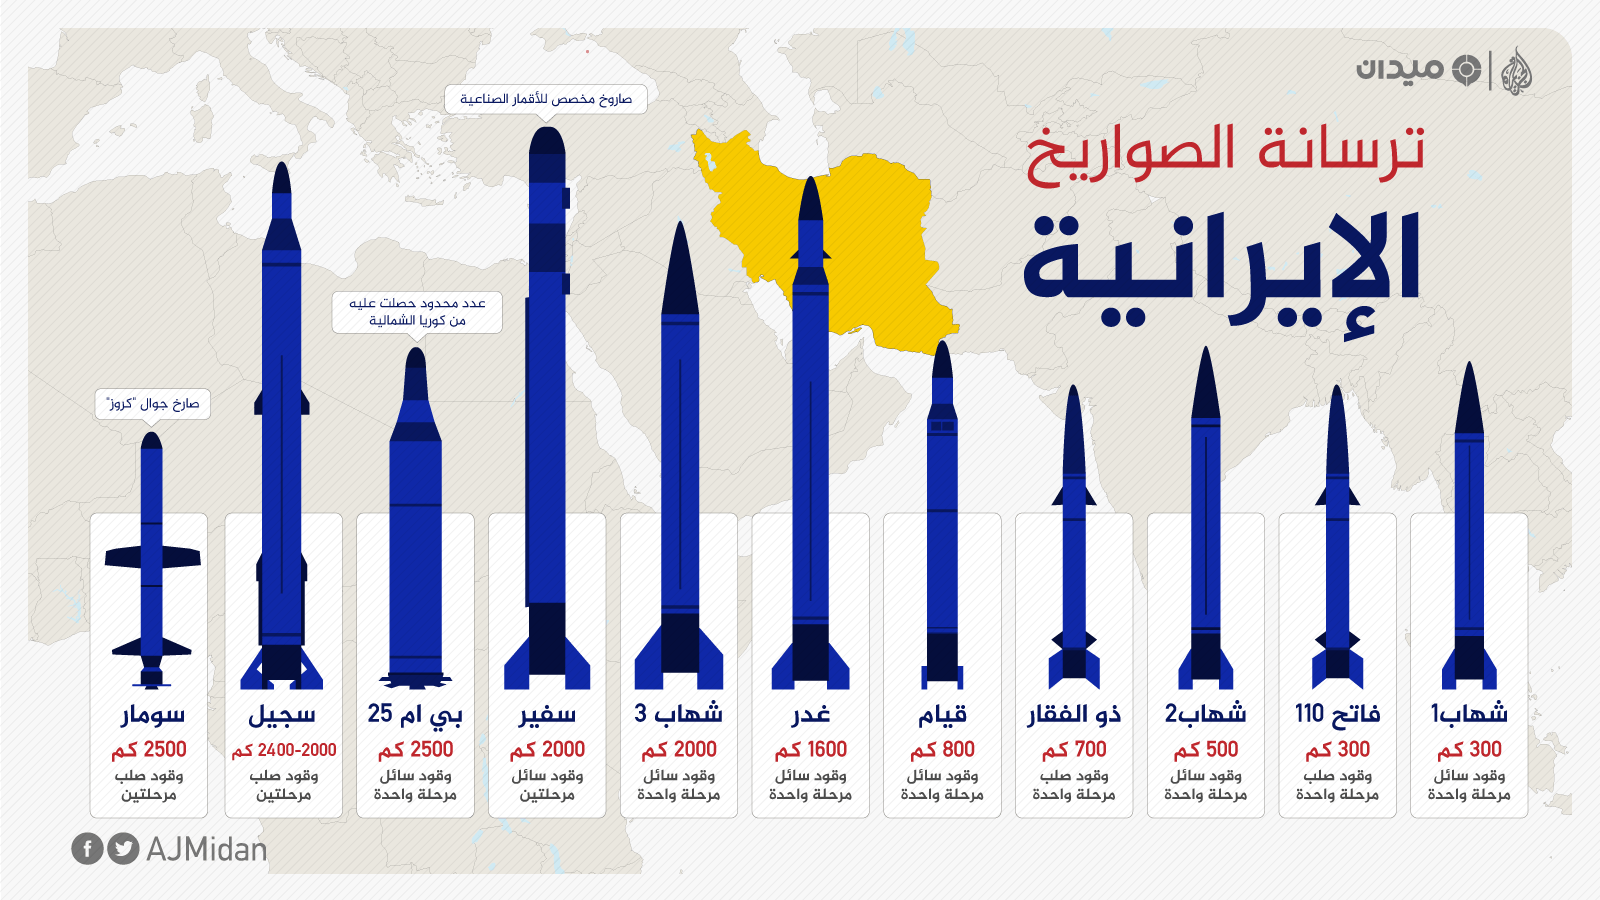 أبرز الصناعات العسكرية الإيرانية  3f072e08-06c5-4001-9520-aa75344a1a05